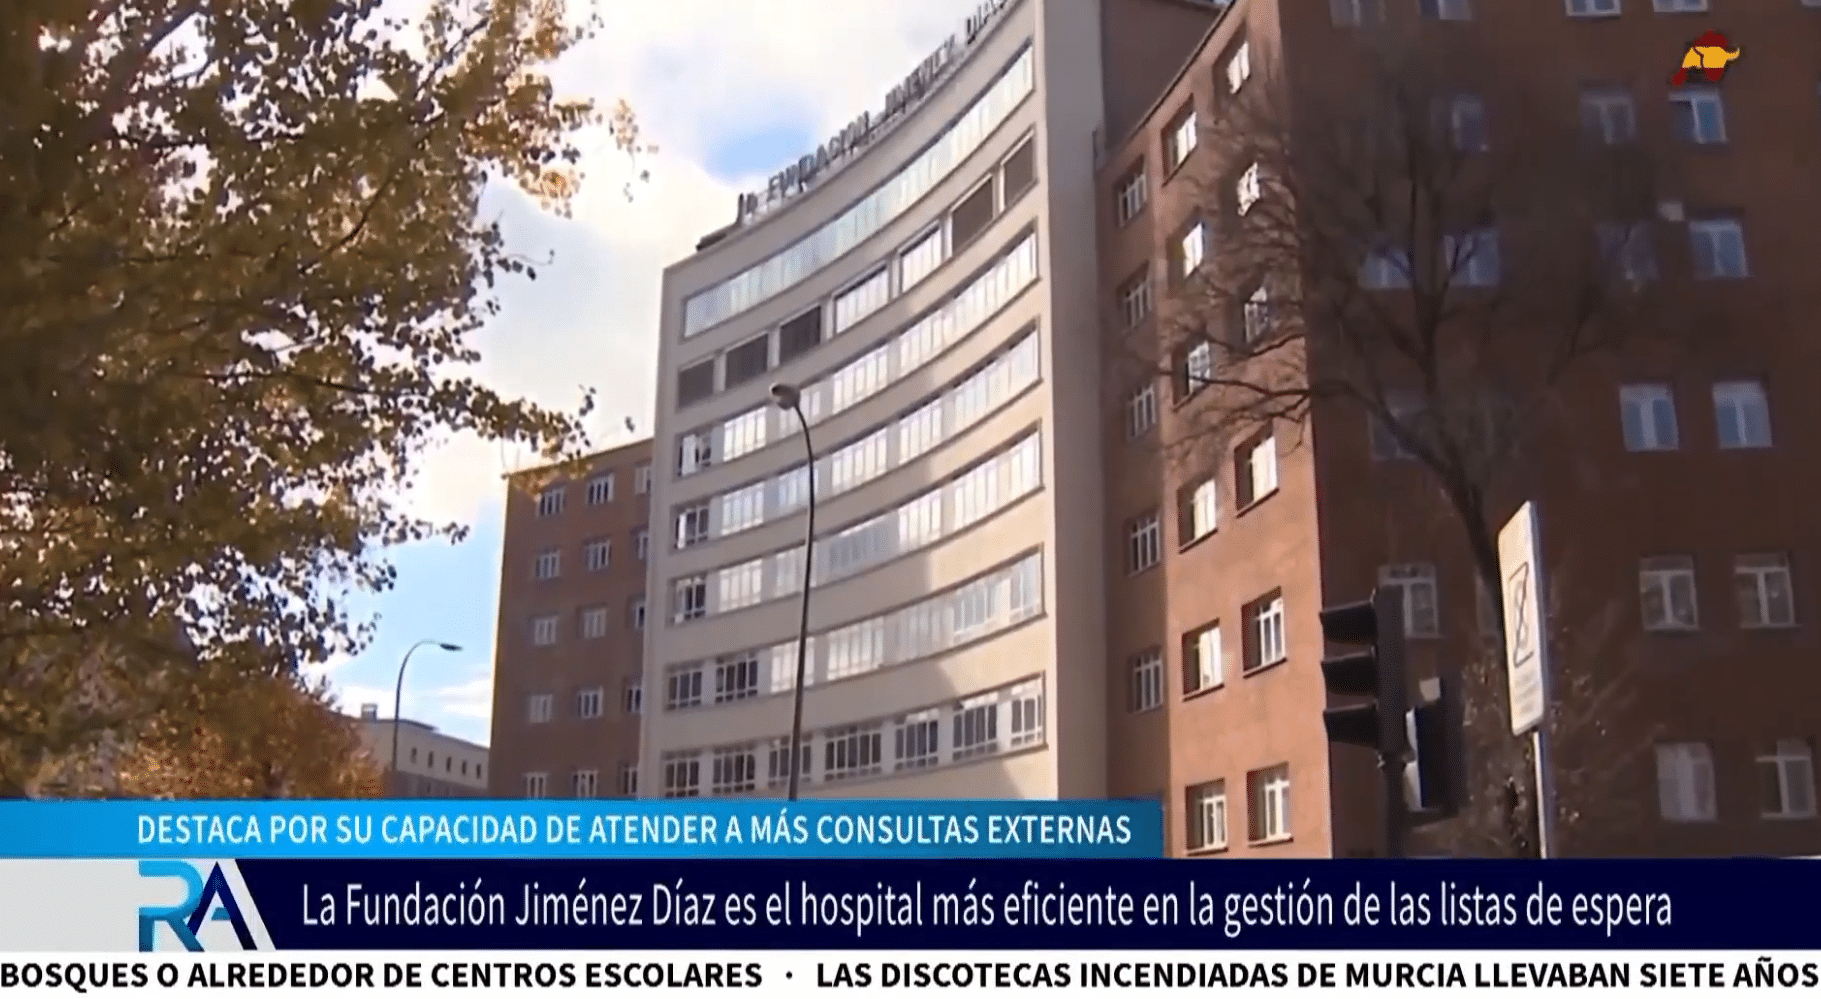 La Fundación Jiménez Díaz es el centro hospitalario más eficiente en gestión de listas de espera